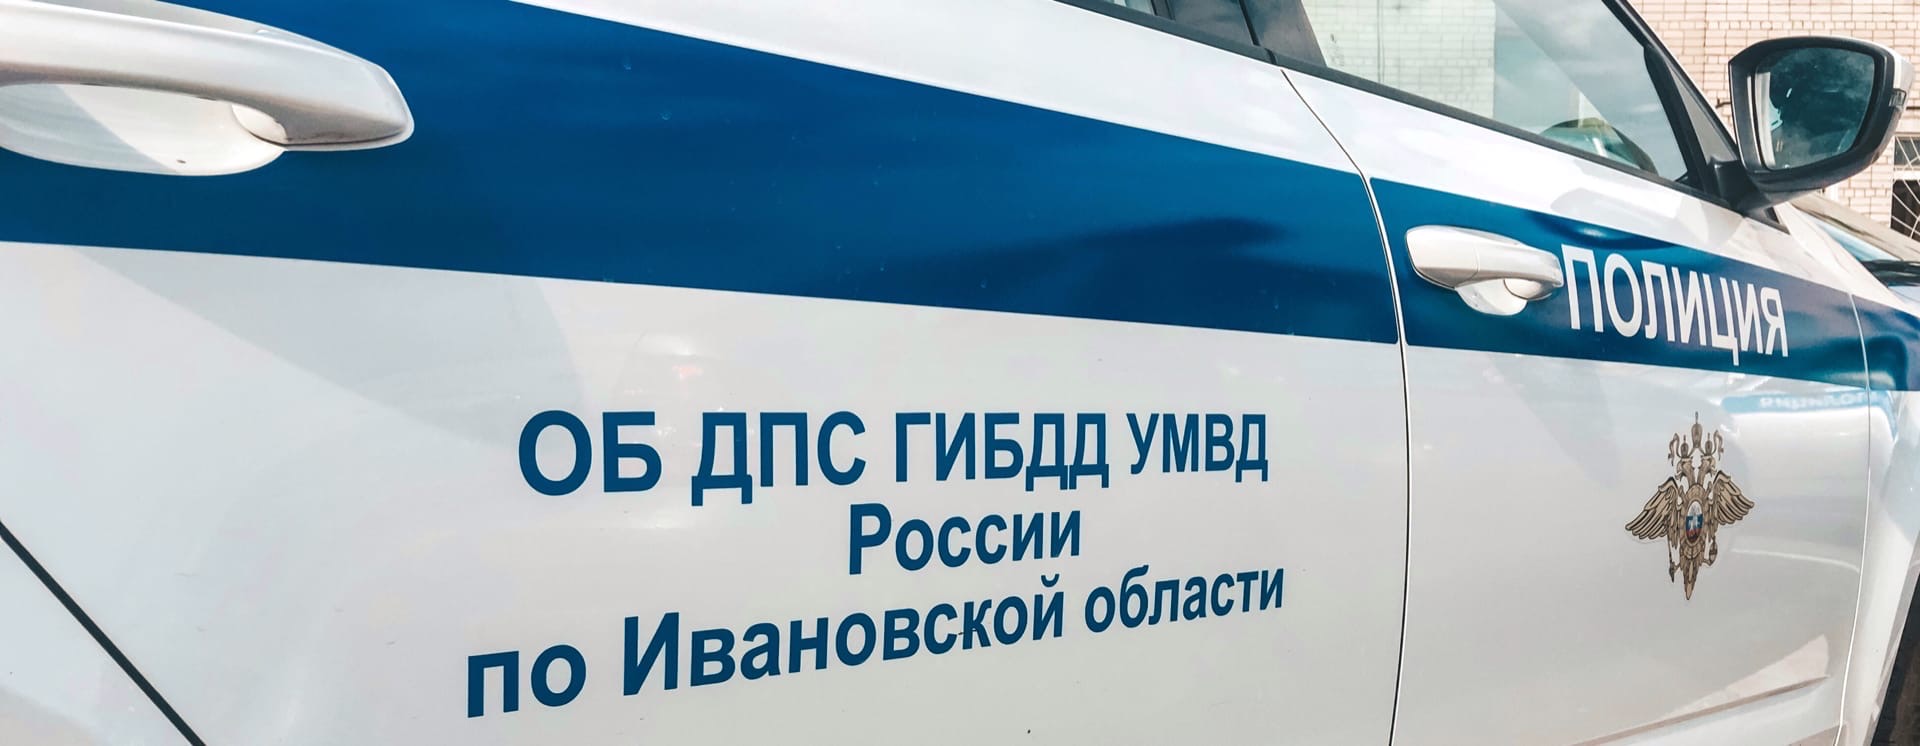 Три человека пострадали в ночном ДТП в Ивановской области